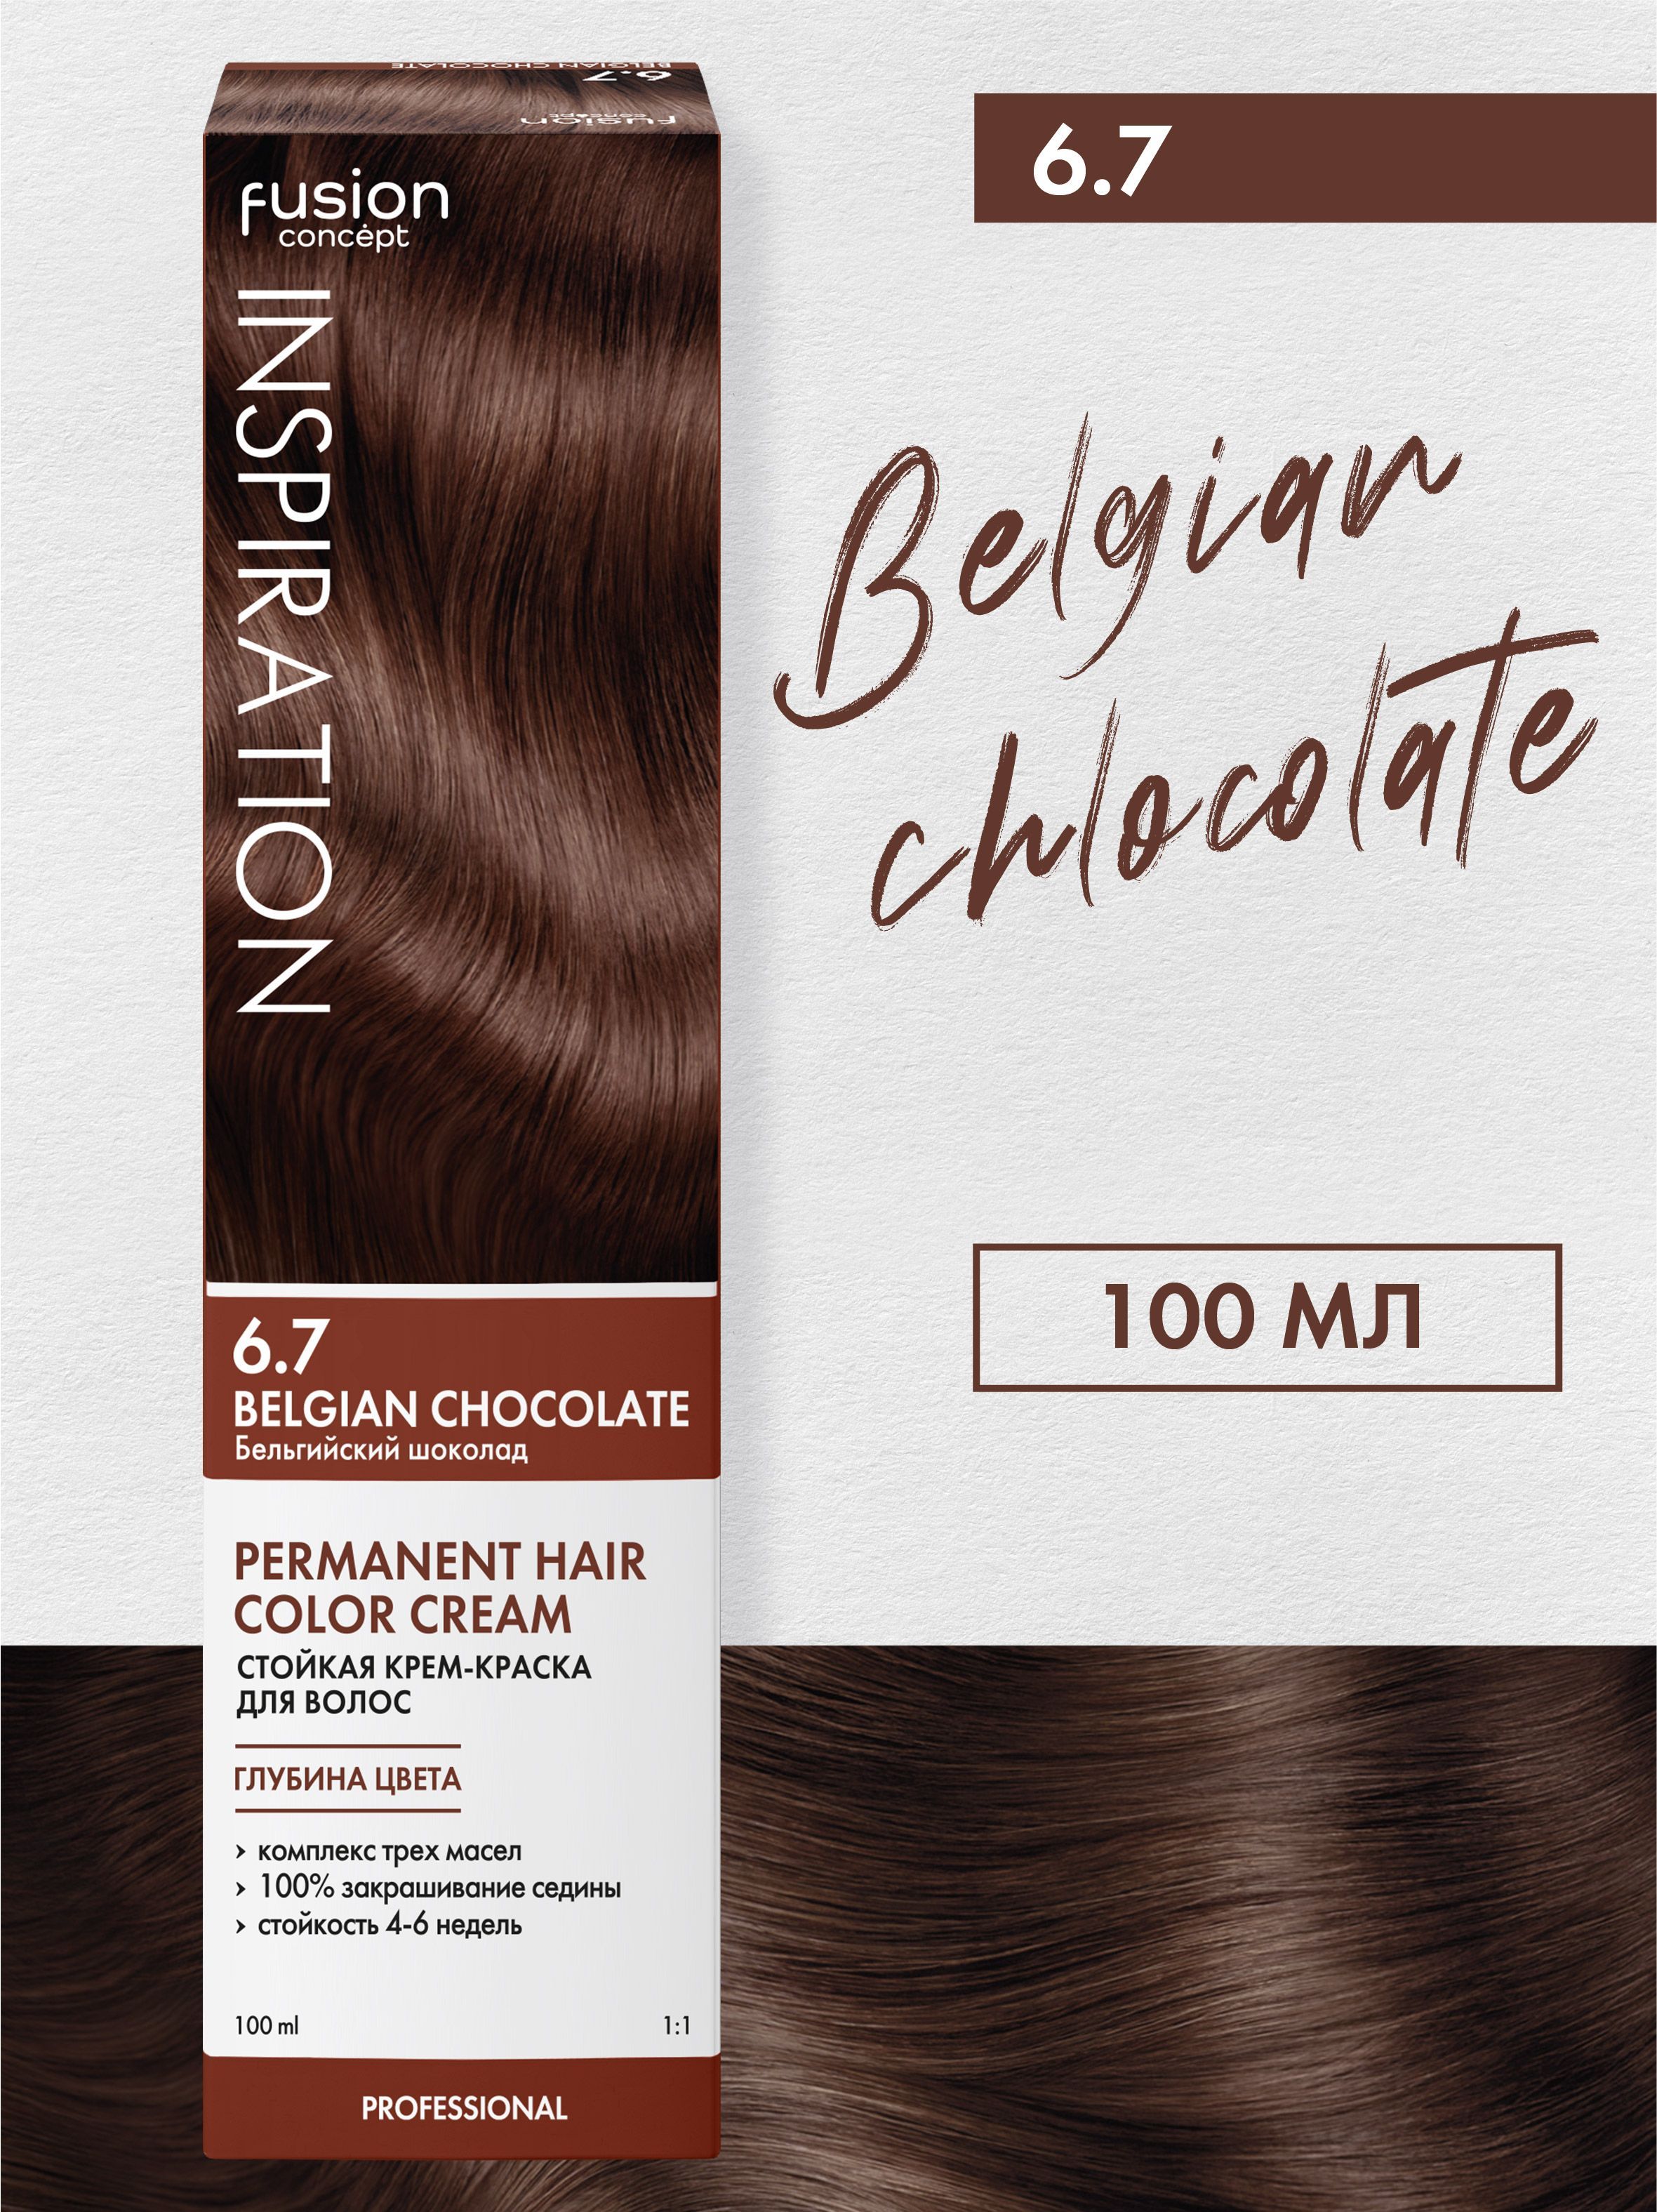 Fusion brown. Концепт Фьюжн inspiration 6.7 бельгийский шоколад. Краска для волос Concept Fusion. Концепт Фьюжн краска для волос палитра. Палитра краски Concept Fusion inspiration.